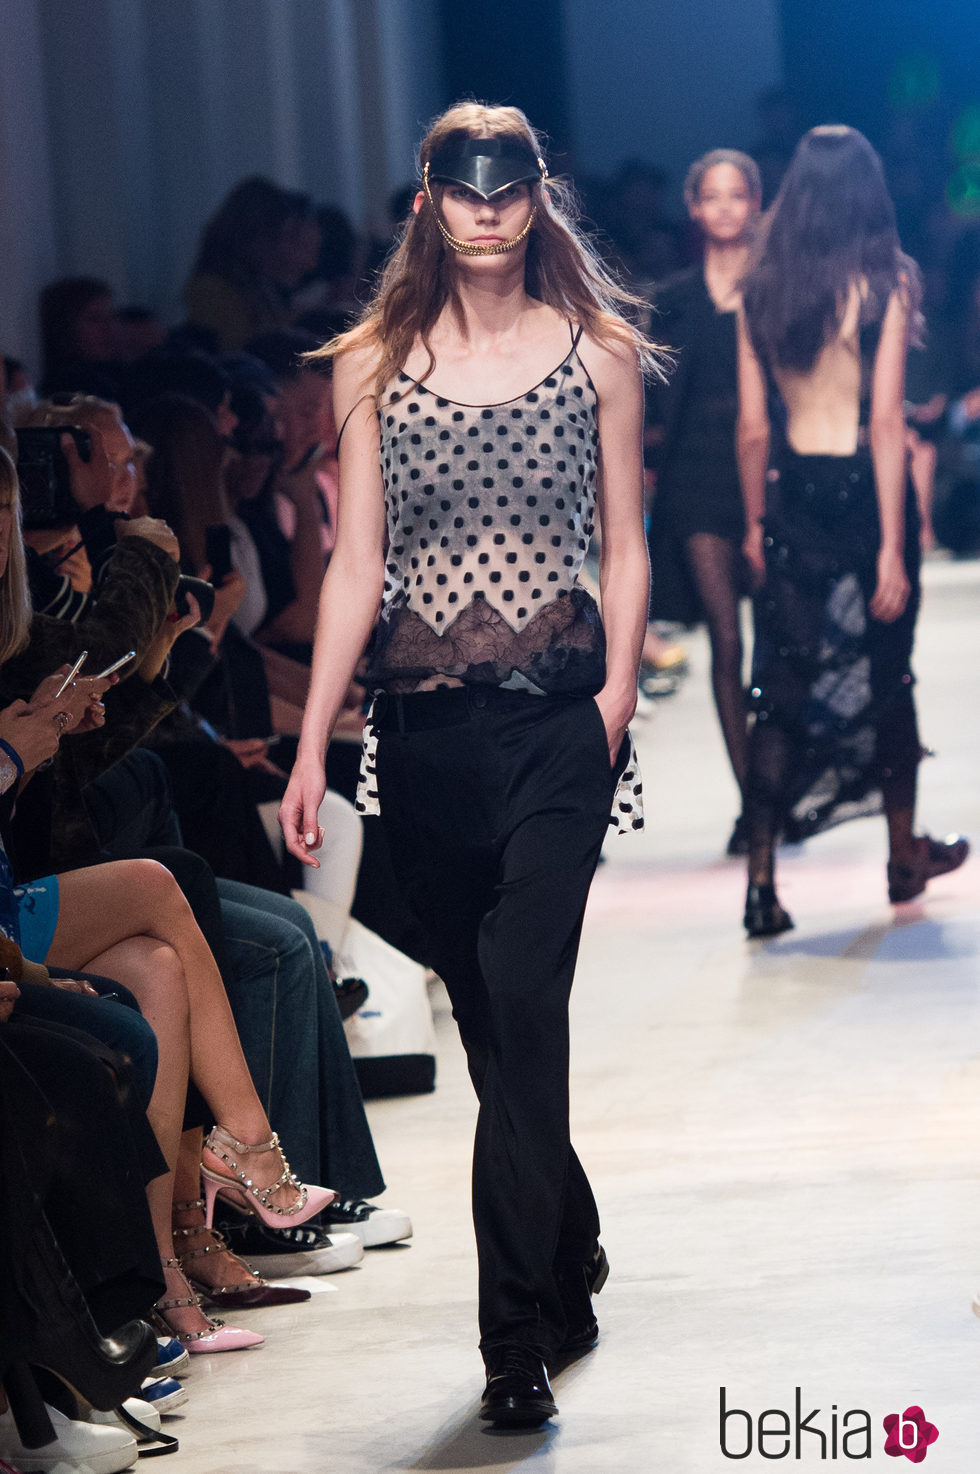 Camisa de puntos y pantalón negro de la nueva colección primavera/verano 2016 de John Galliano en Paris Fashion Week